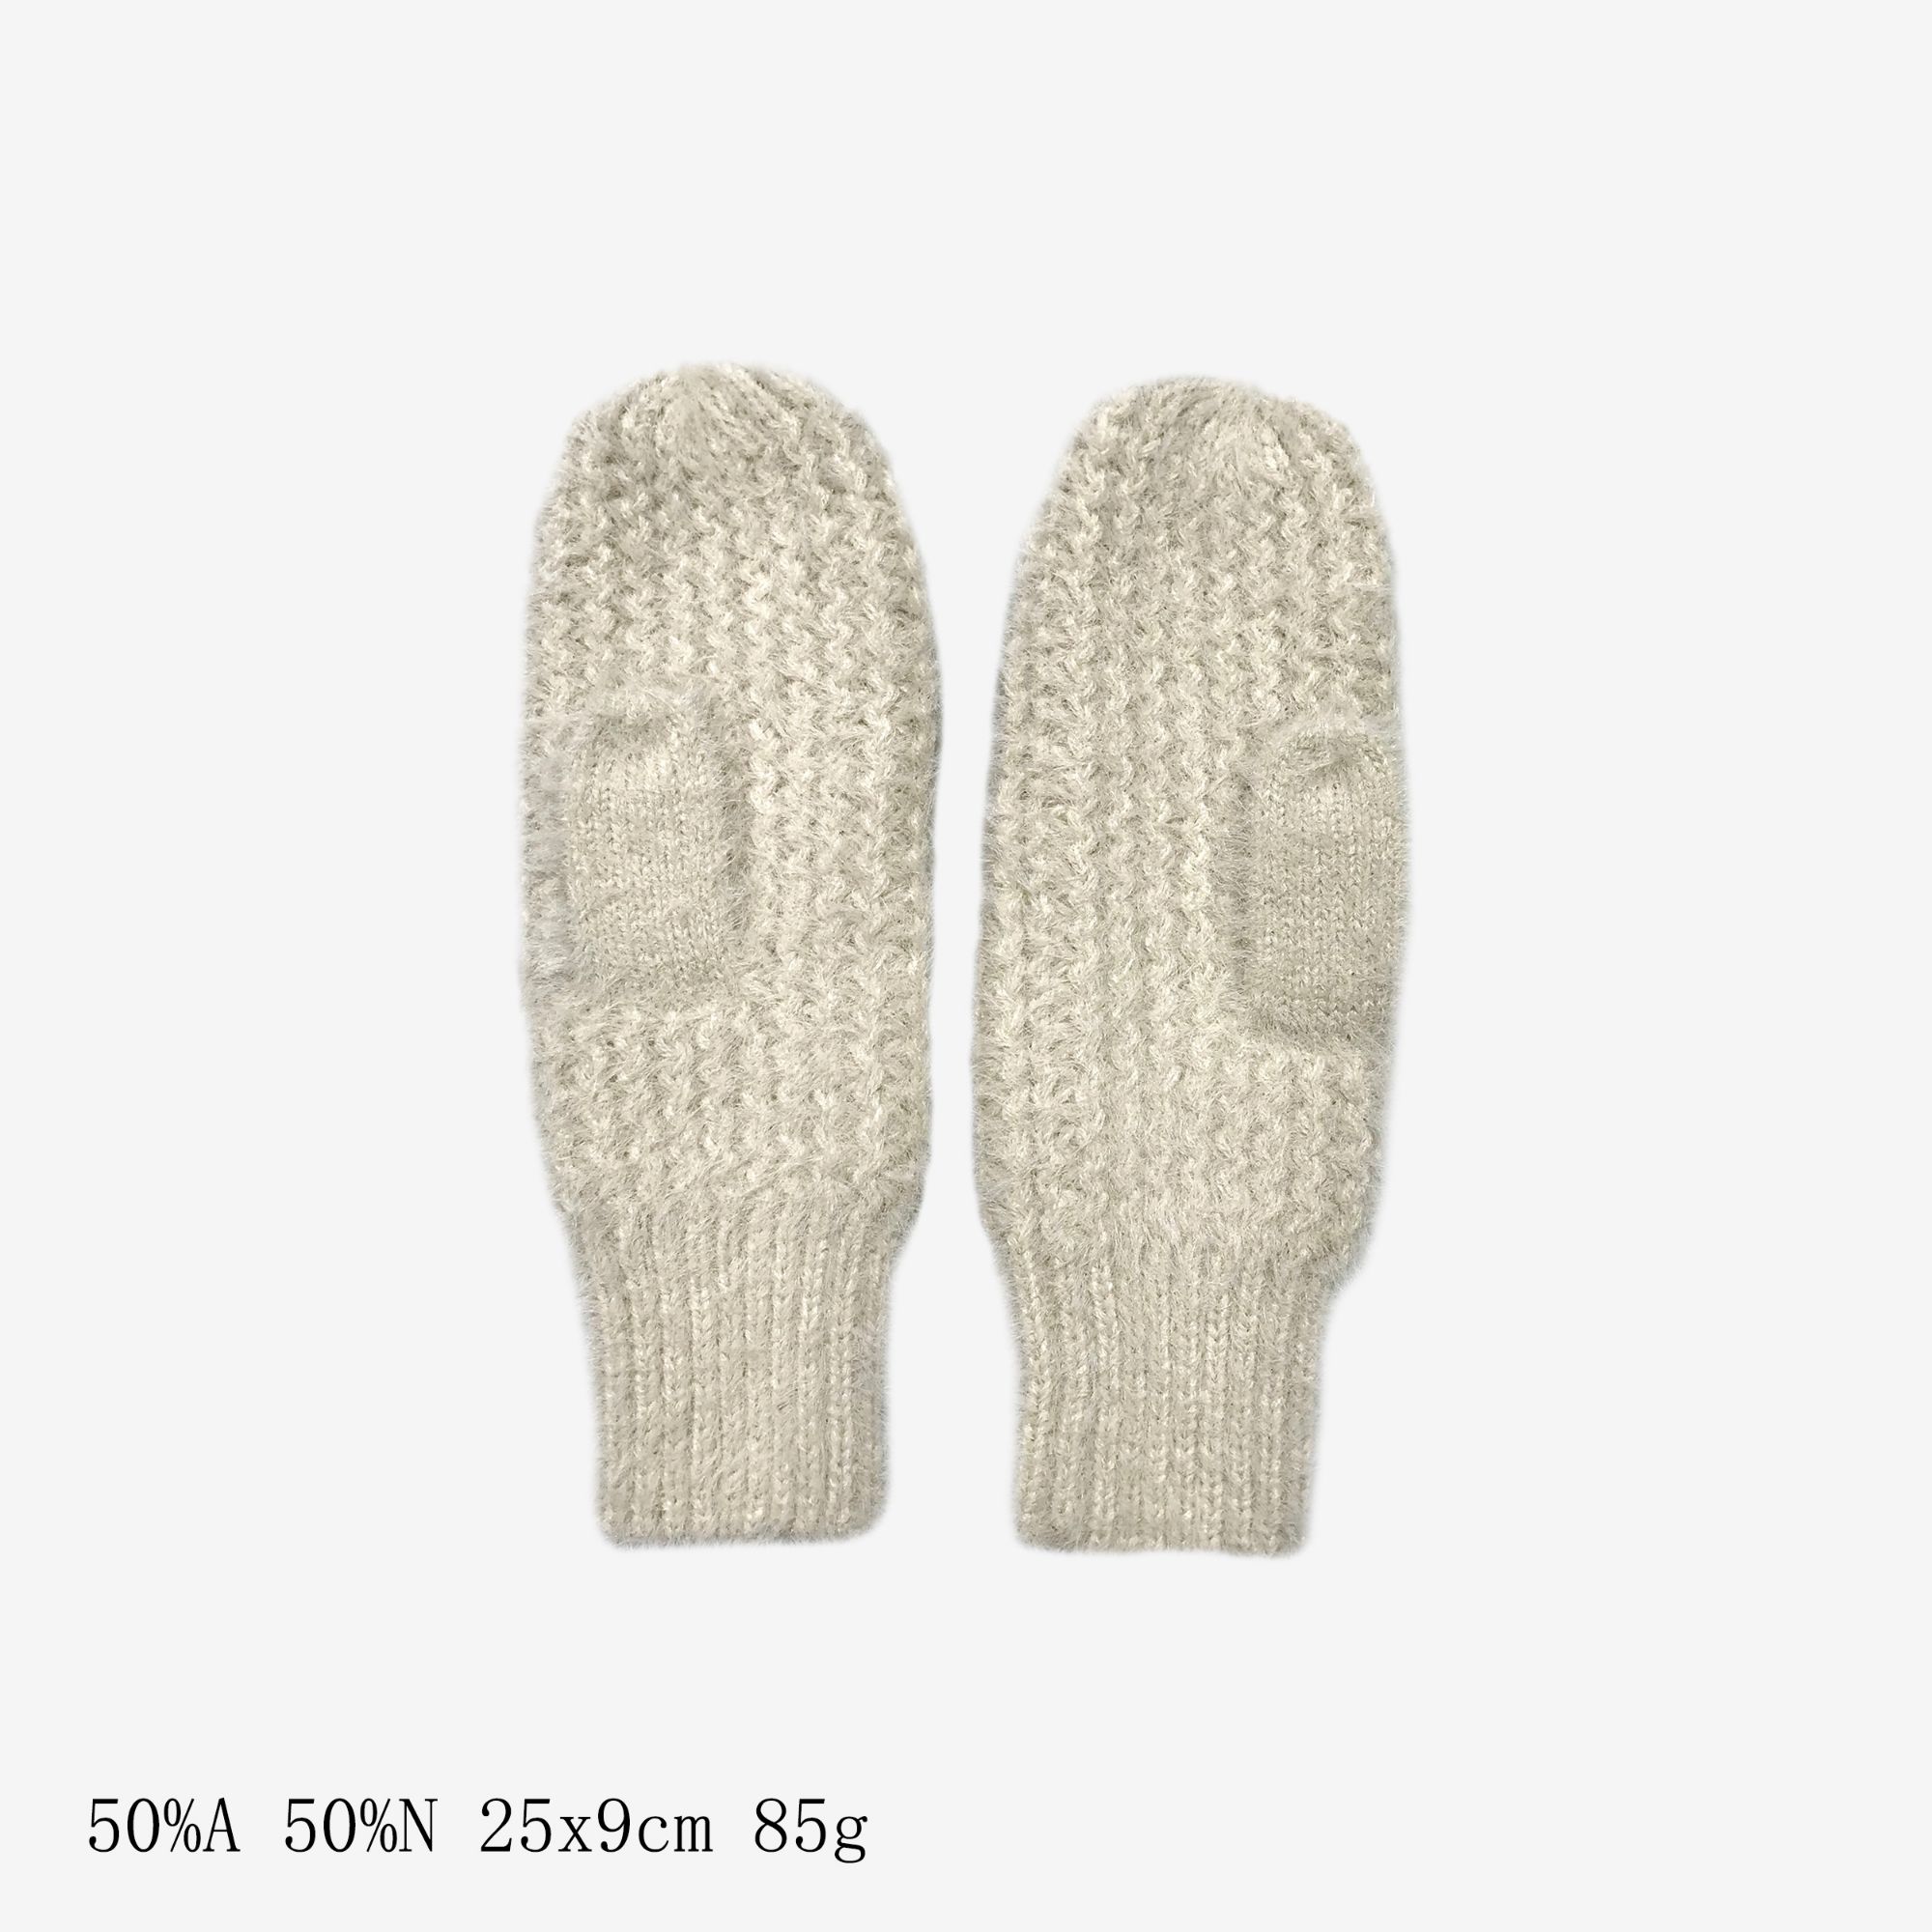 热销新款手套冬天加厚毛线手套保暖无指针织手套男女士户外保暖